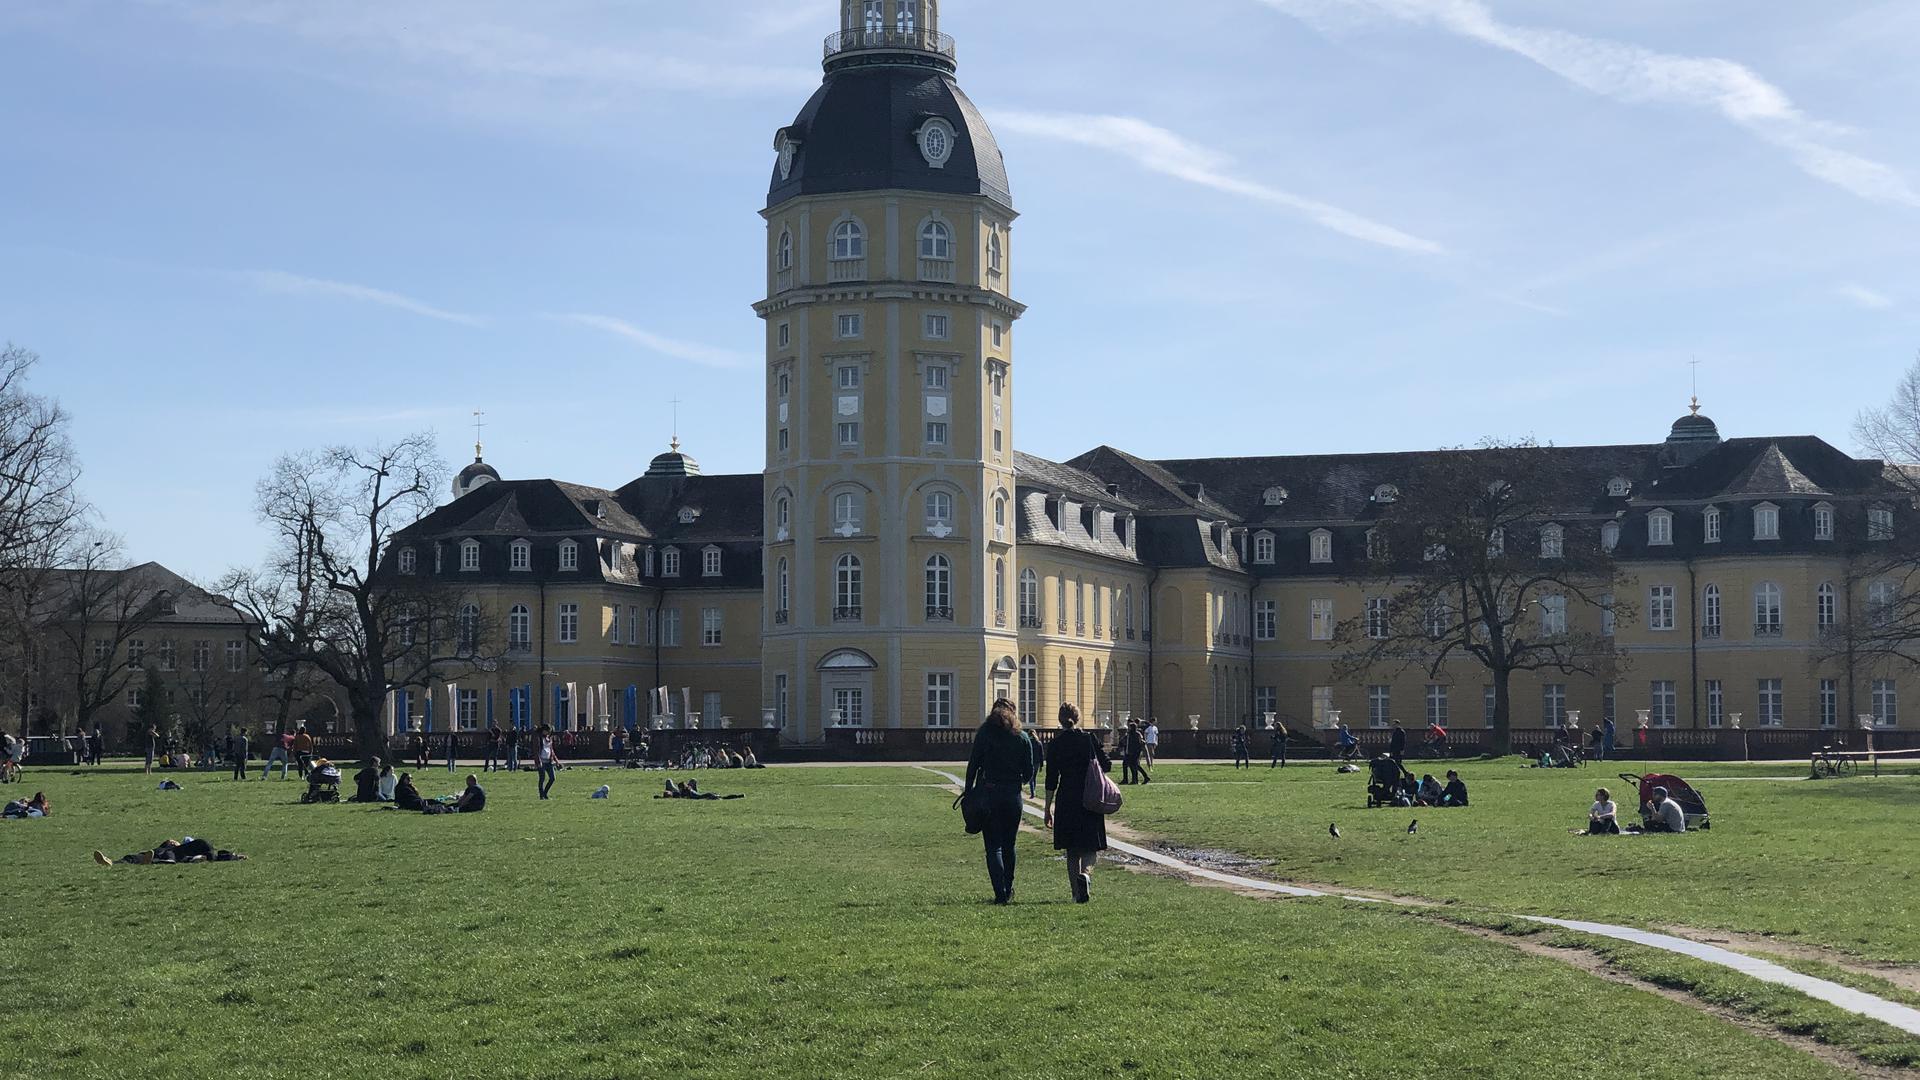 Der Ansturm ist überschaubar: Im Karlsruher Schlossgarten war am Sonntag nicht wirklich viel los. Bekannte Treffpunkte in den Städten wurden offenbar gemieden. Spaziergänger suchten eher die Ruhe des Waldes.